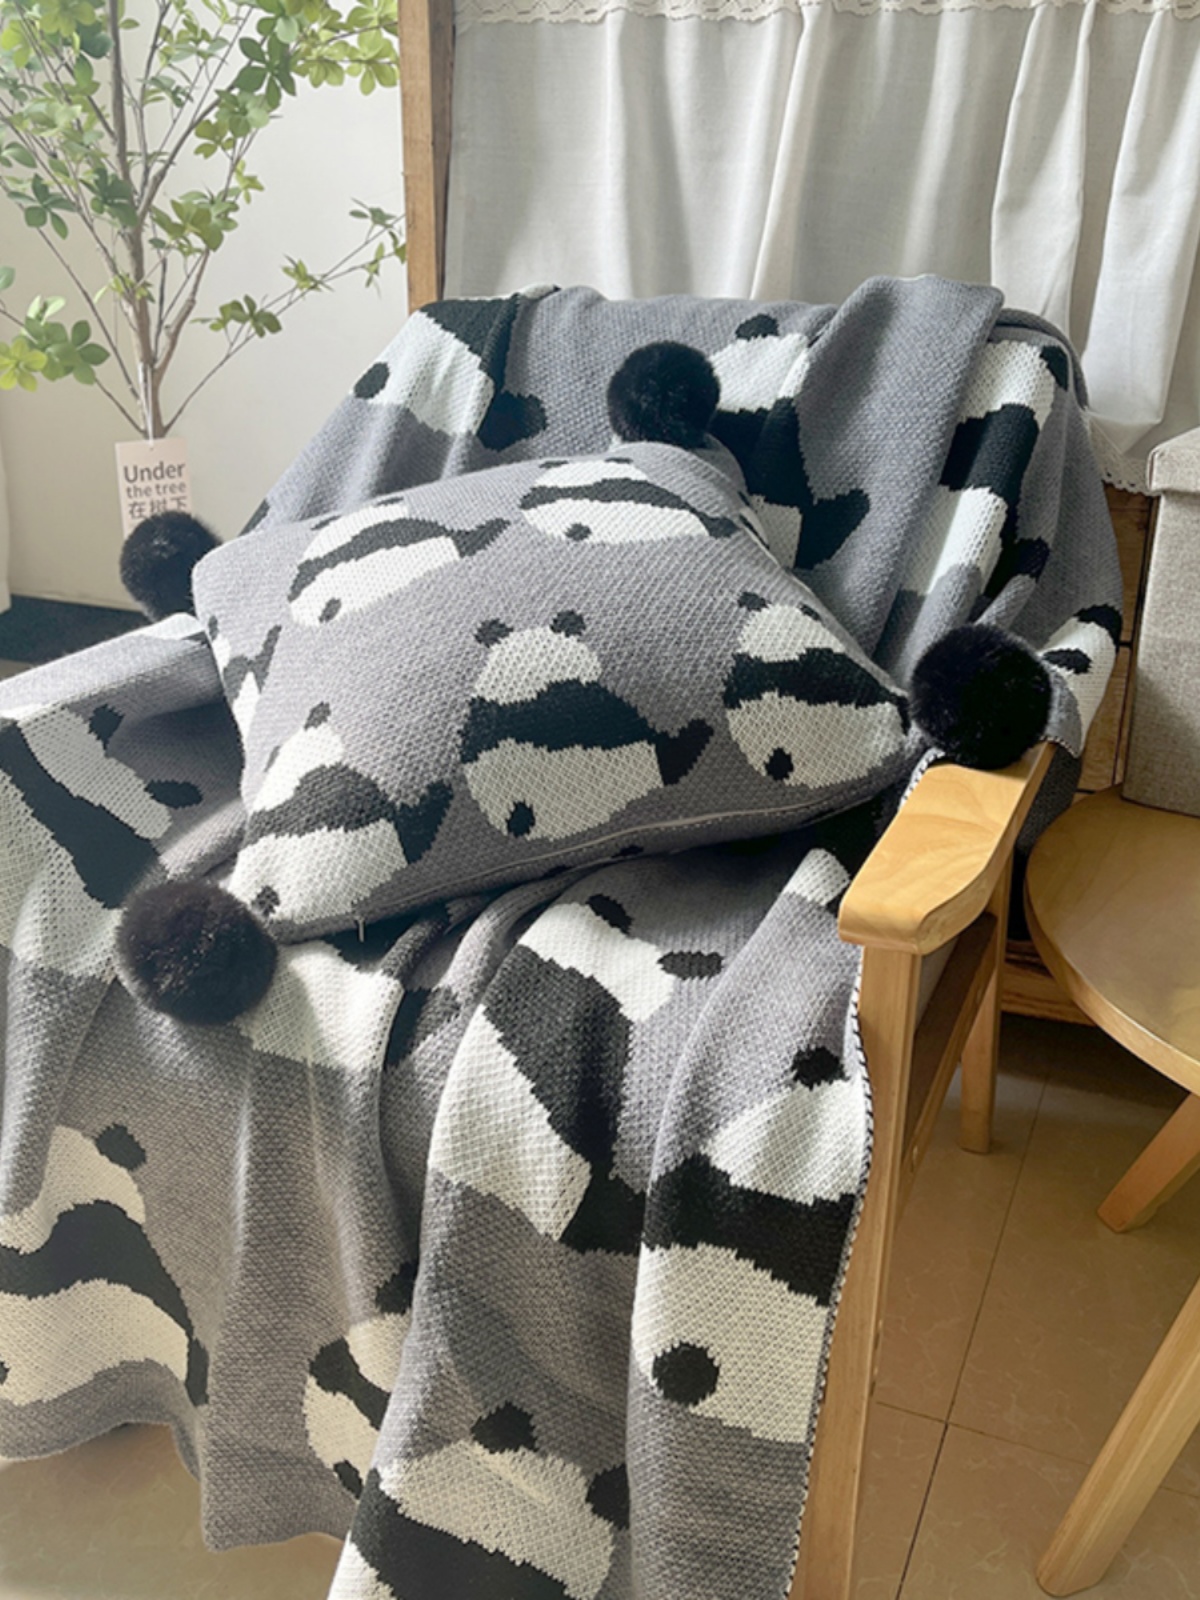 熊貓毯子針織空調毯客廳辦公室午睡四季通用保暖沙發毯